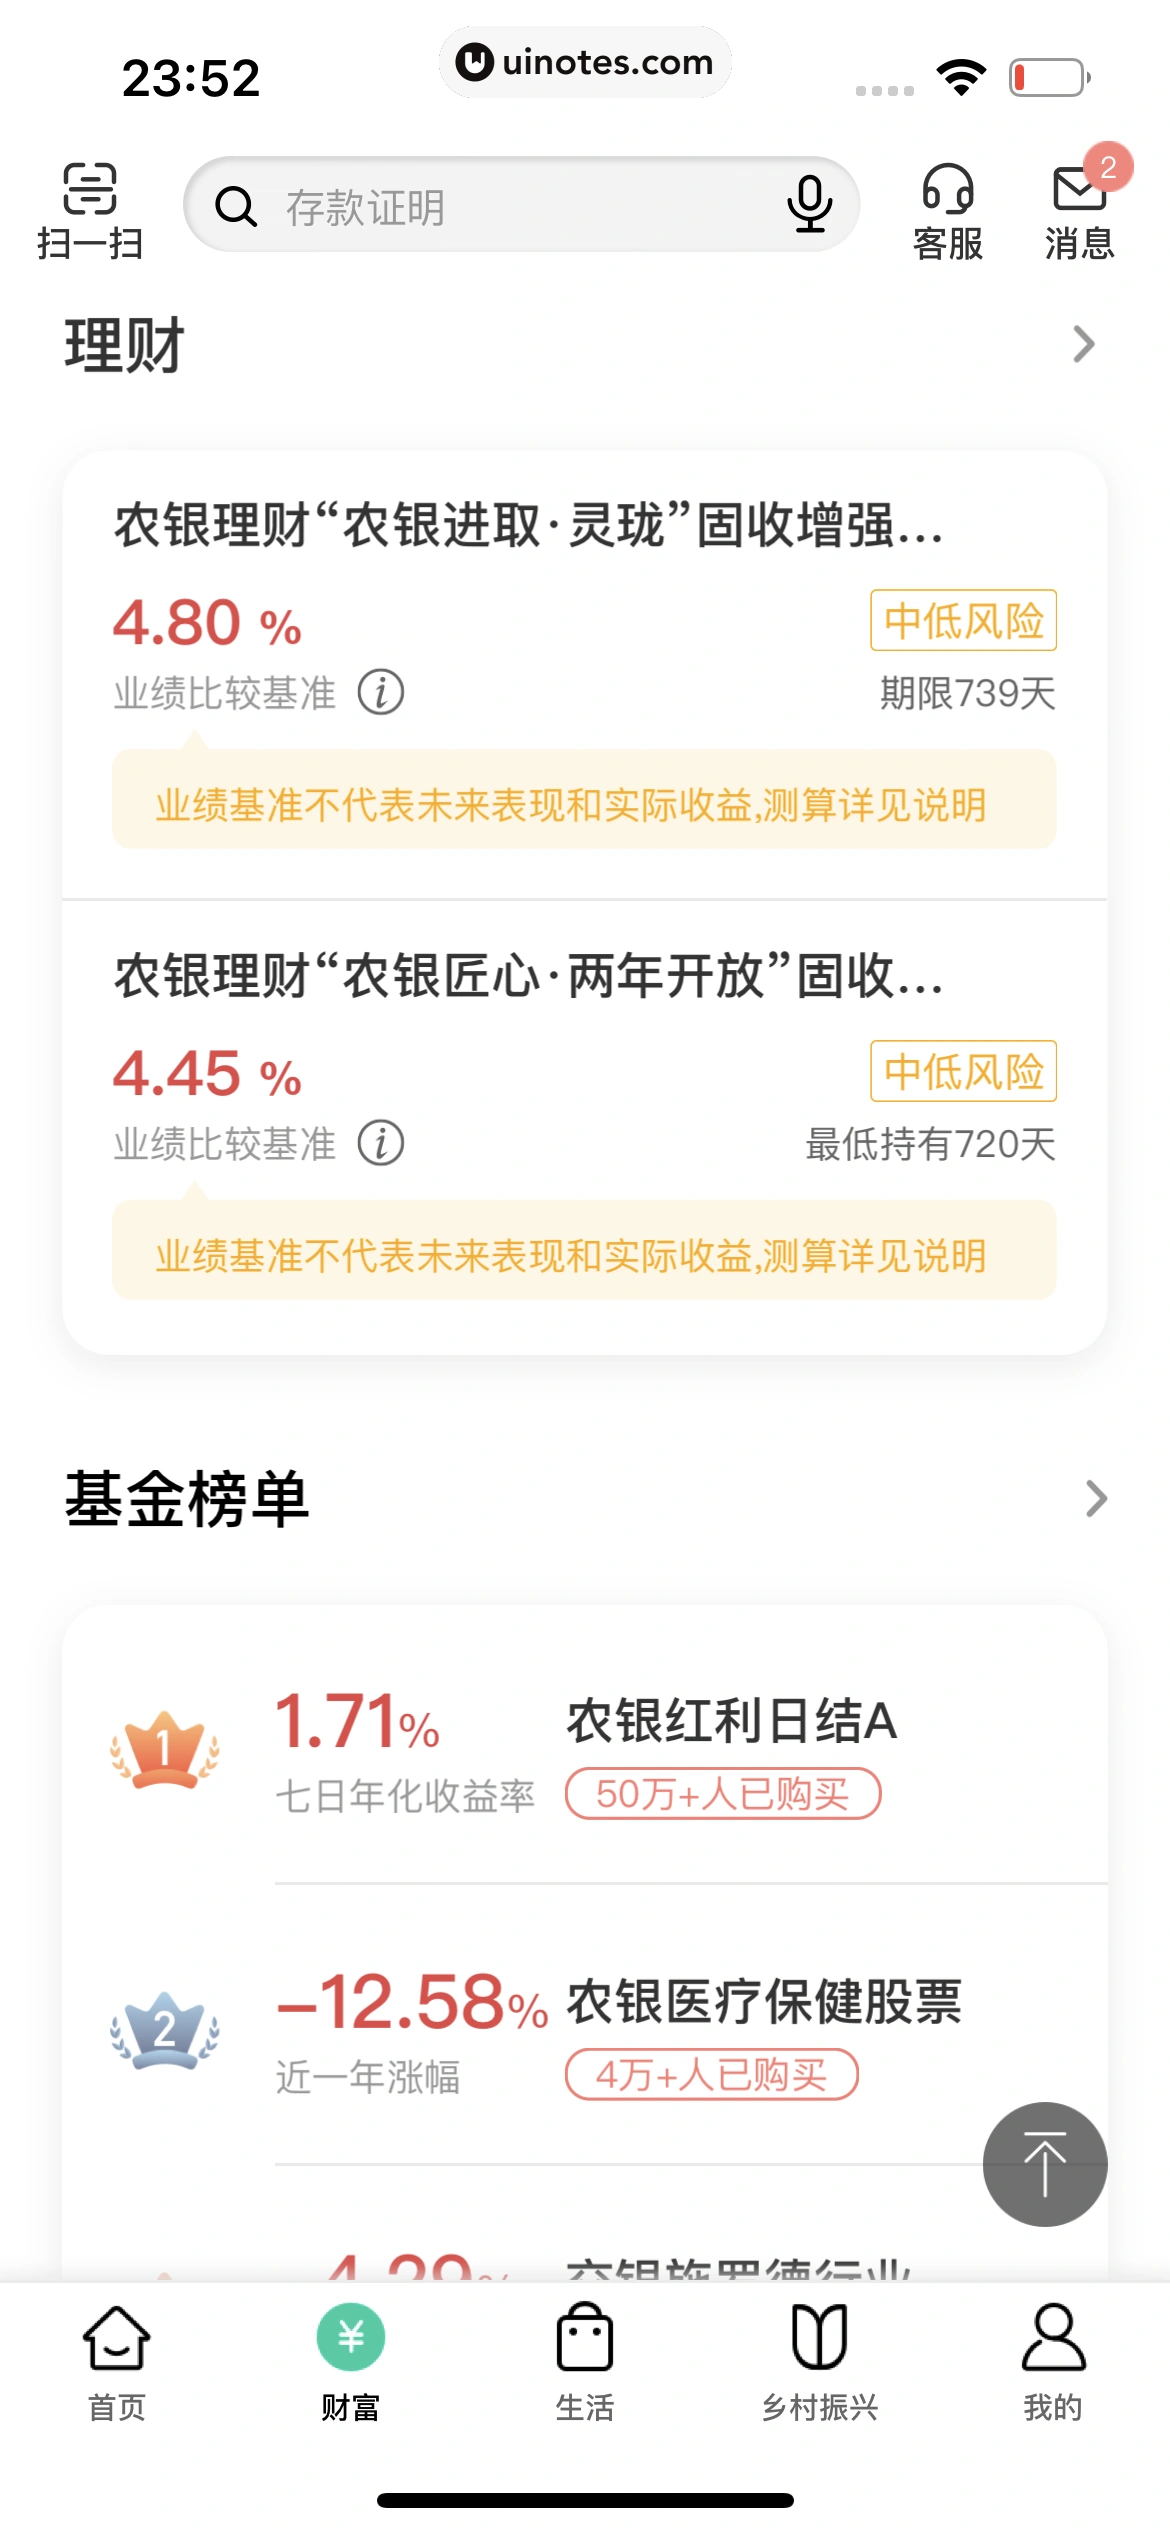 中国农业银行 App 截图 204 - UI Notes